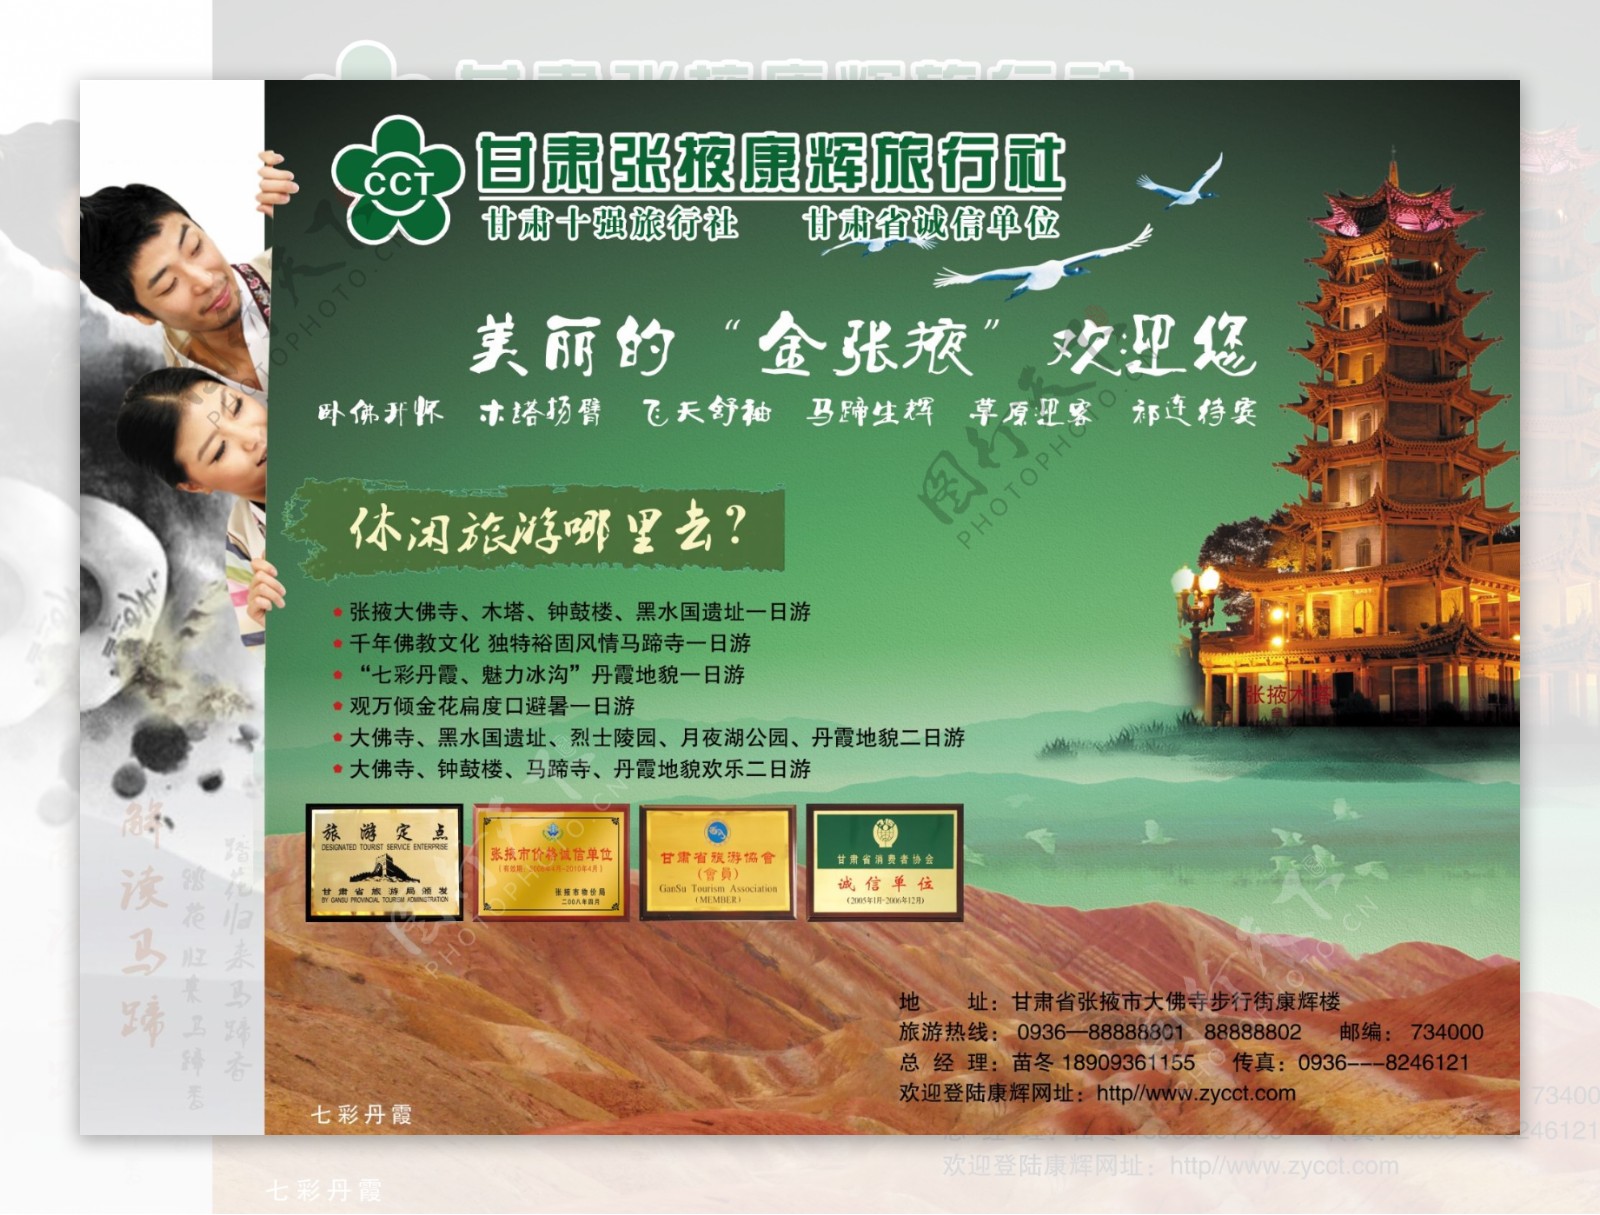 康辉旅行社宣传画面图片